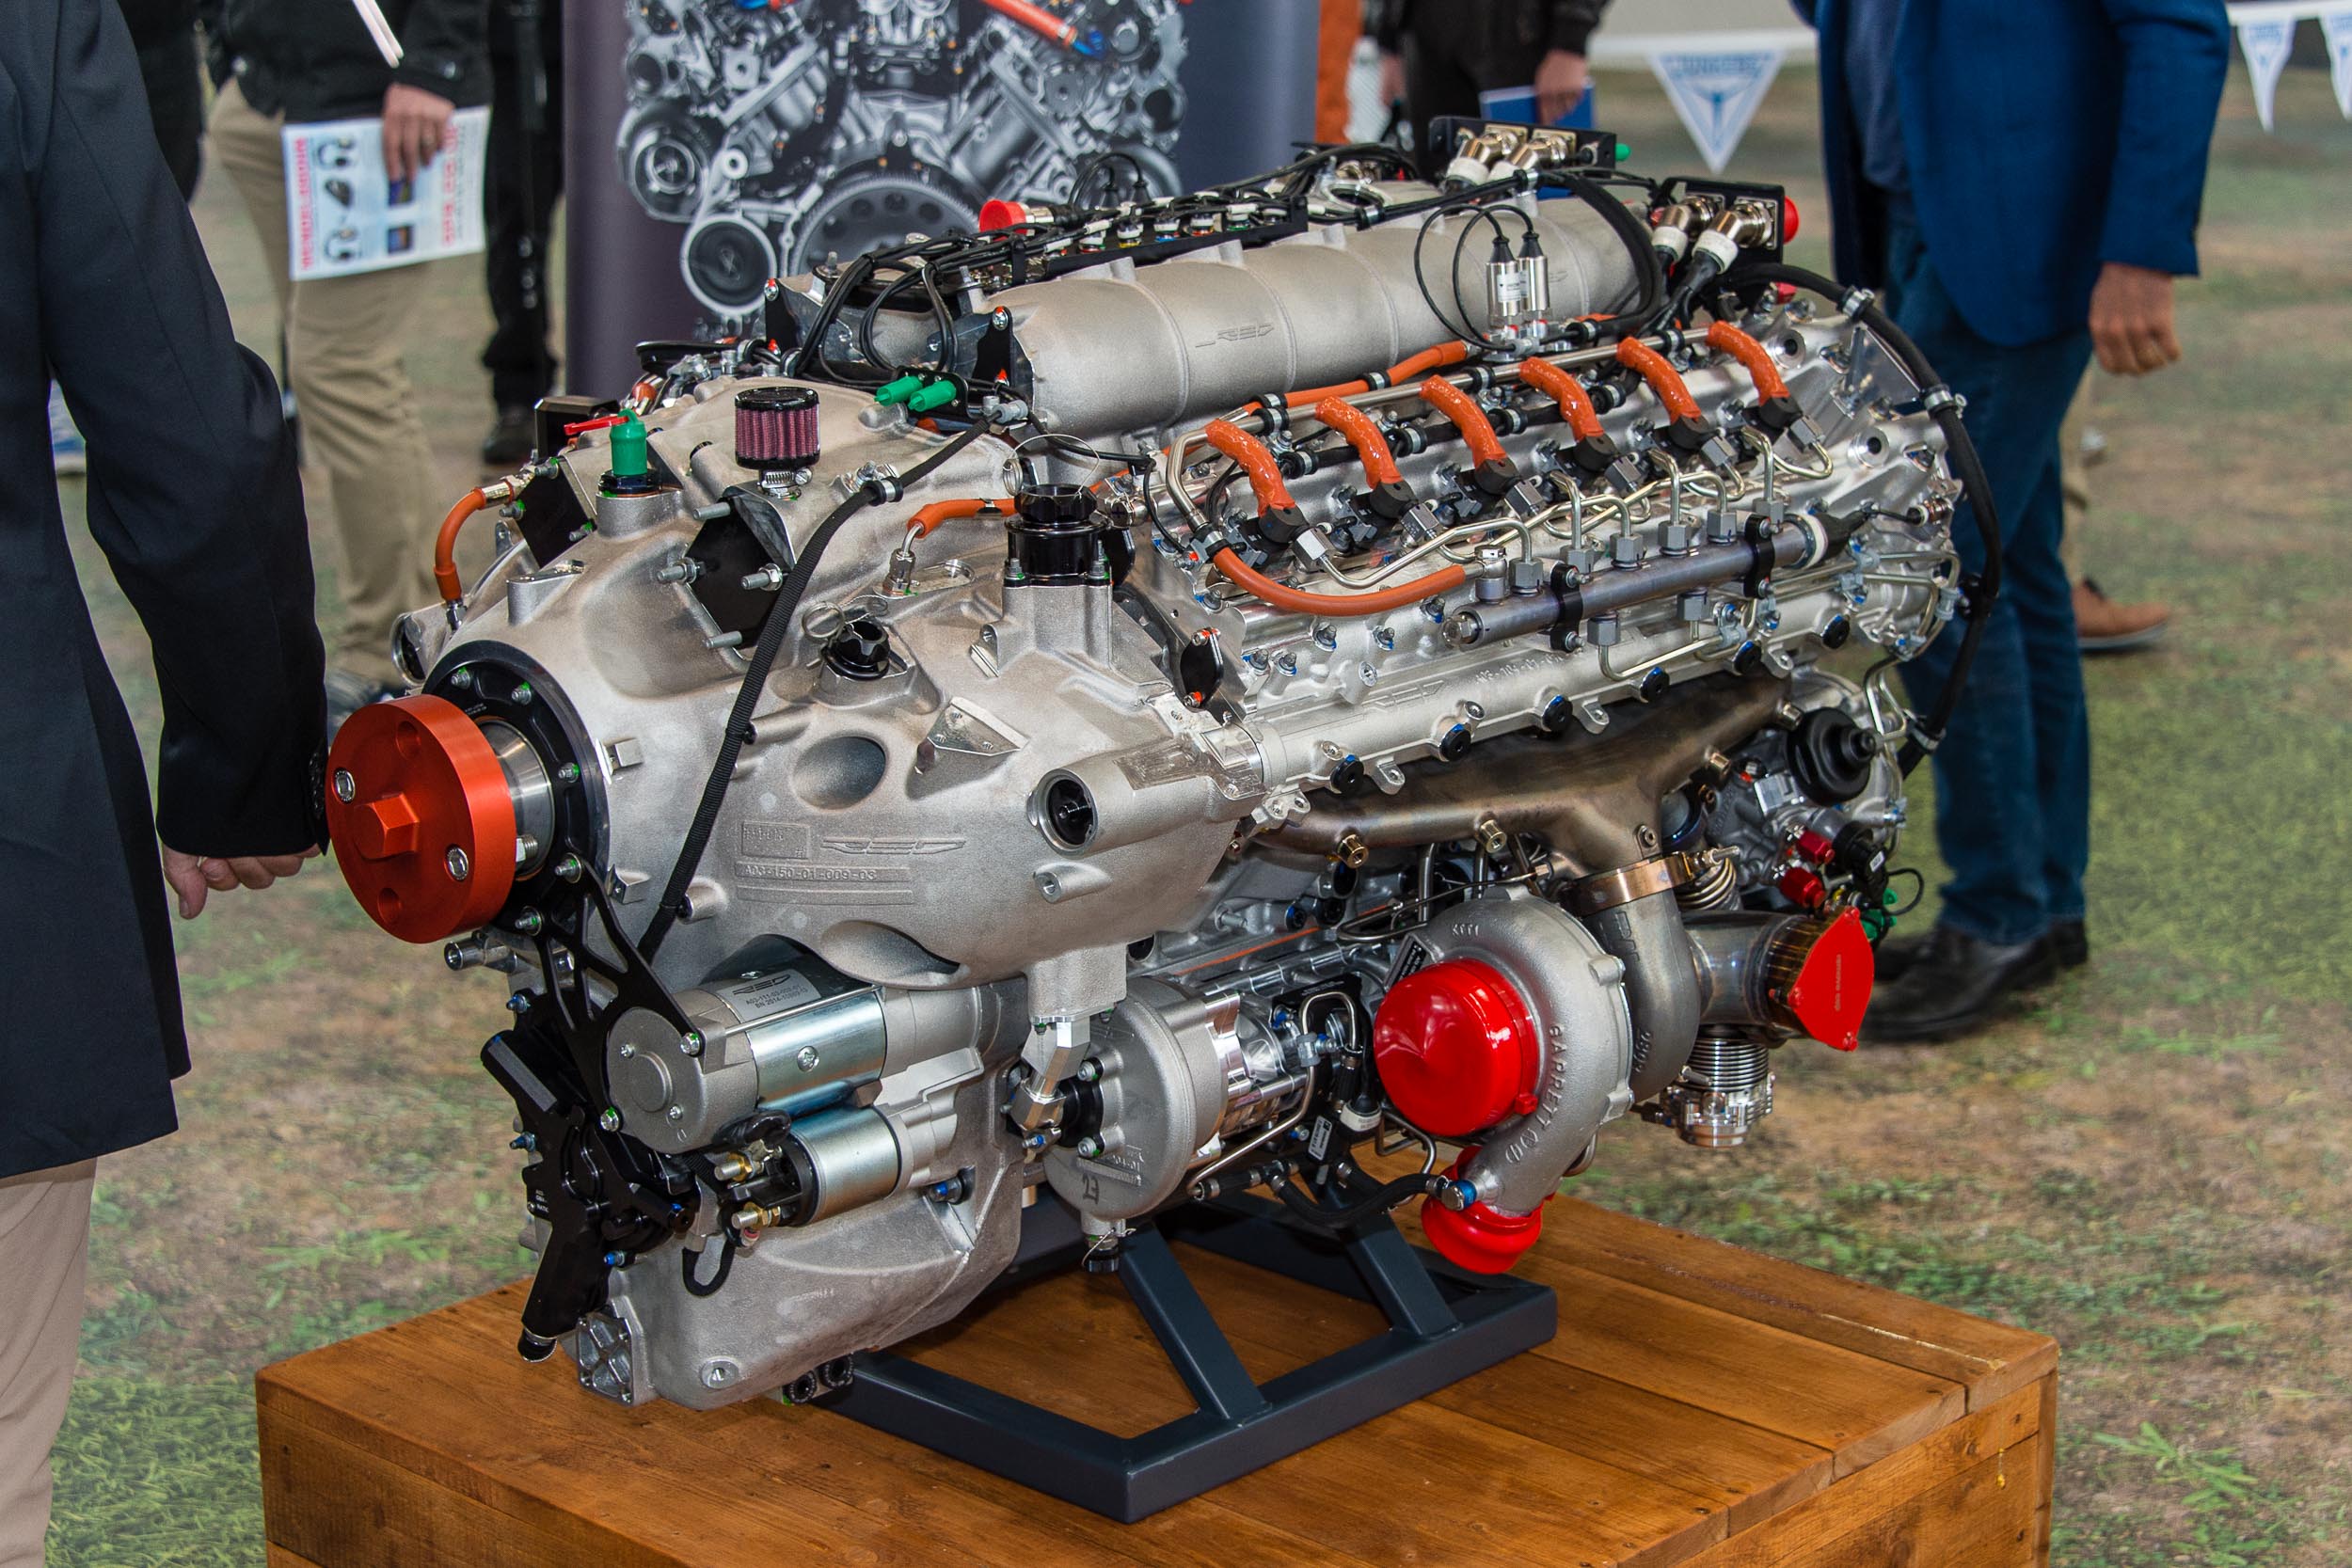 RED V12 engine